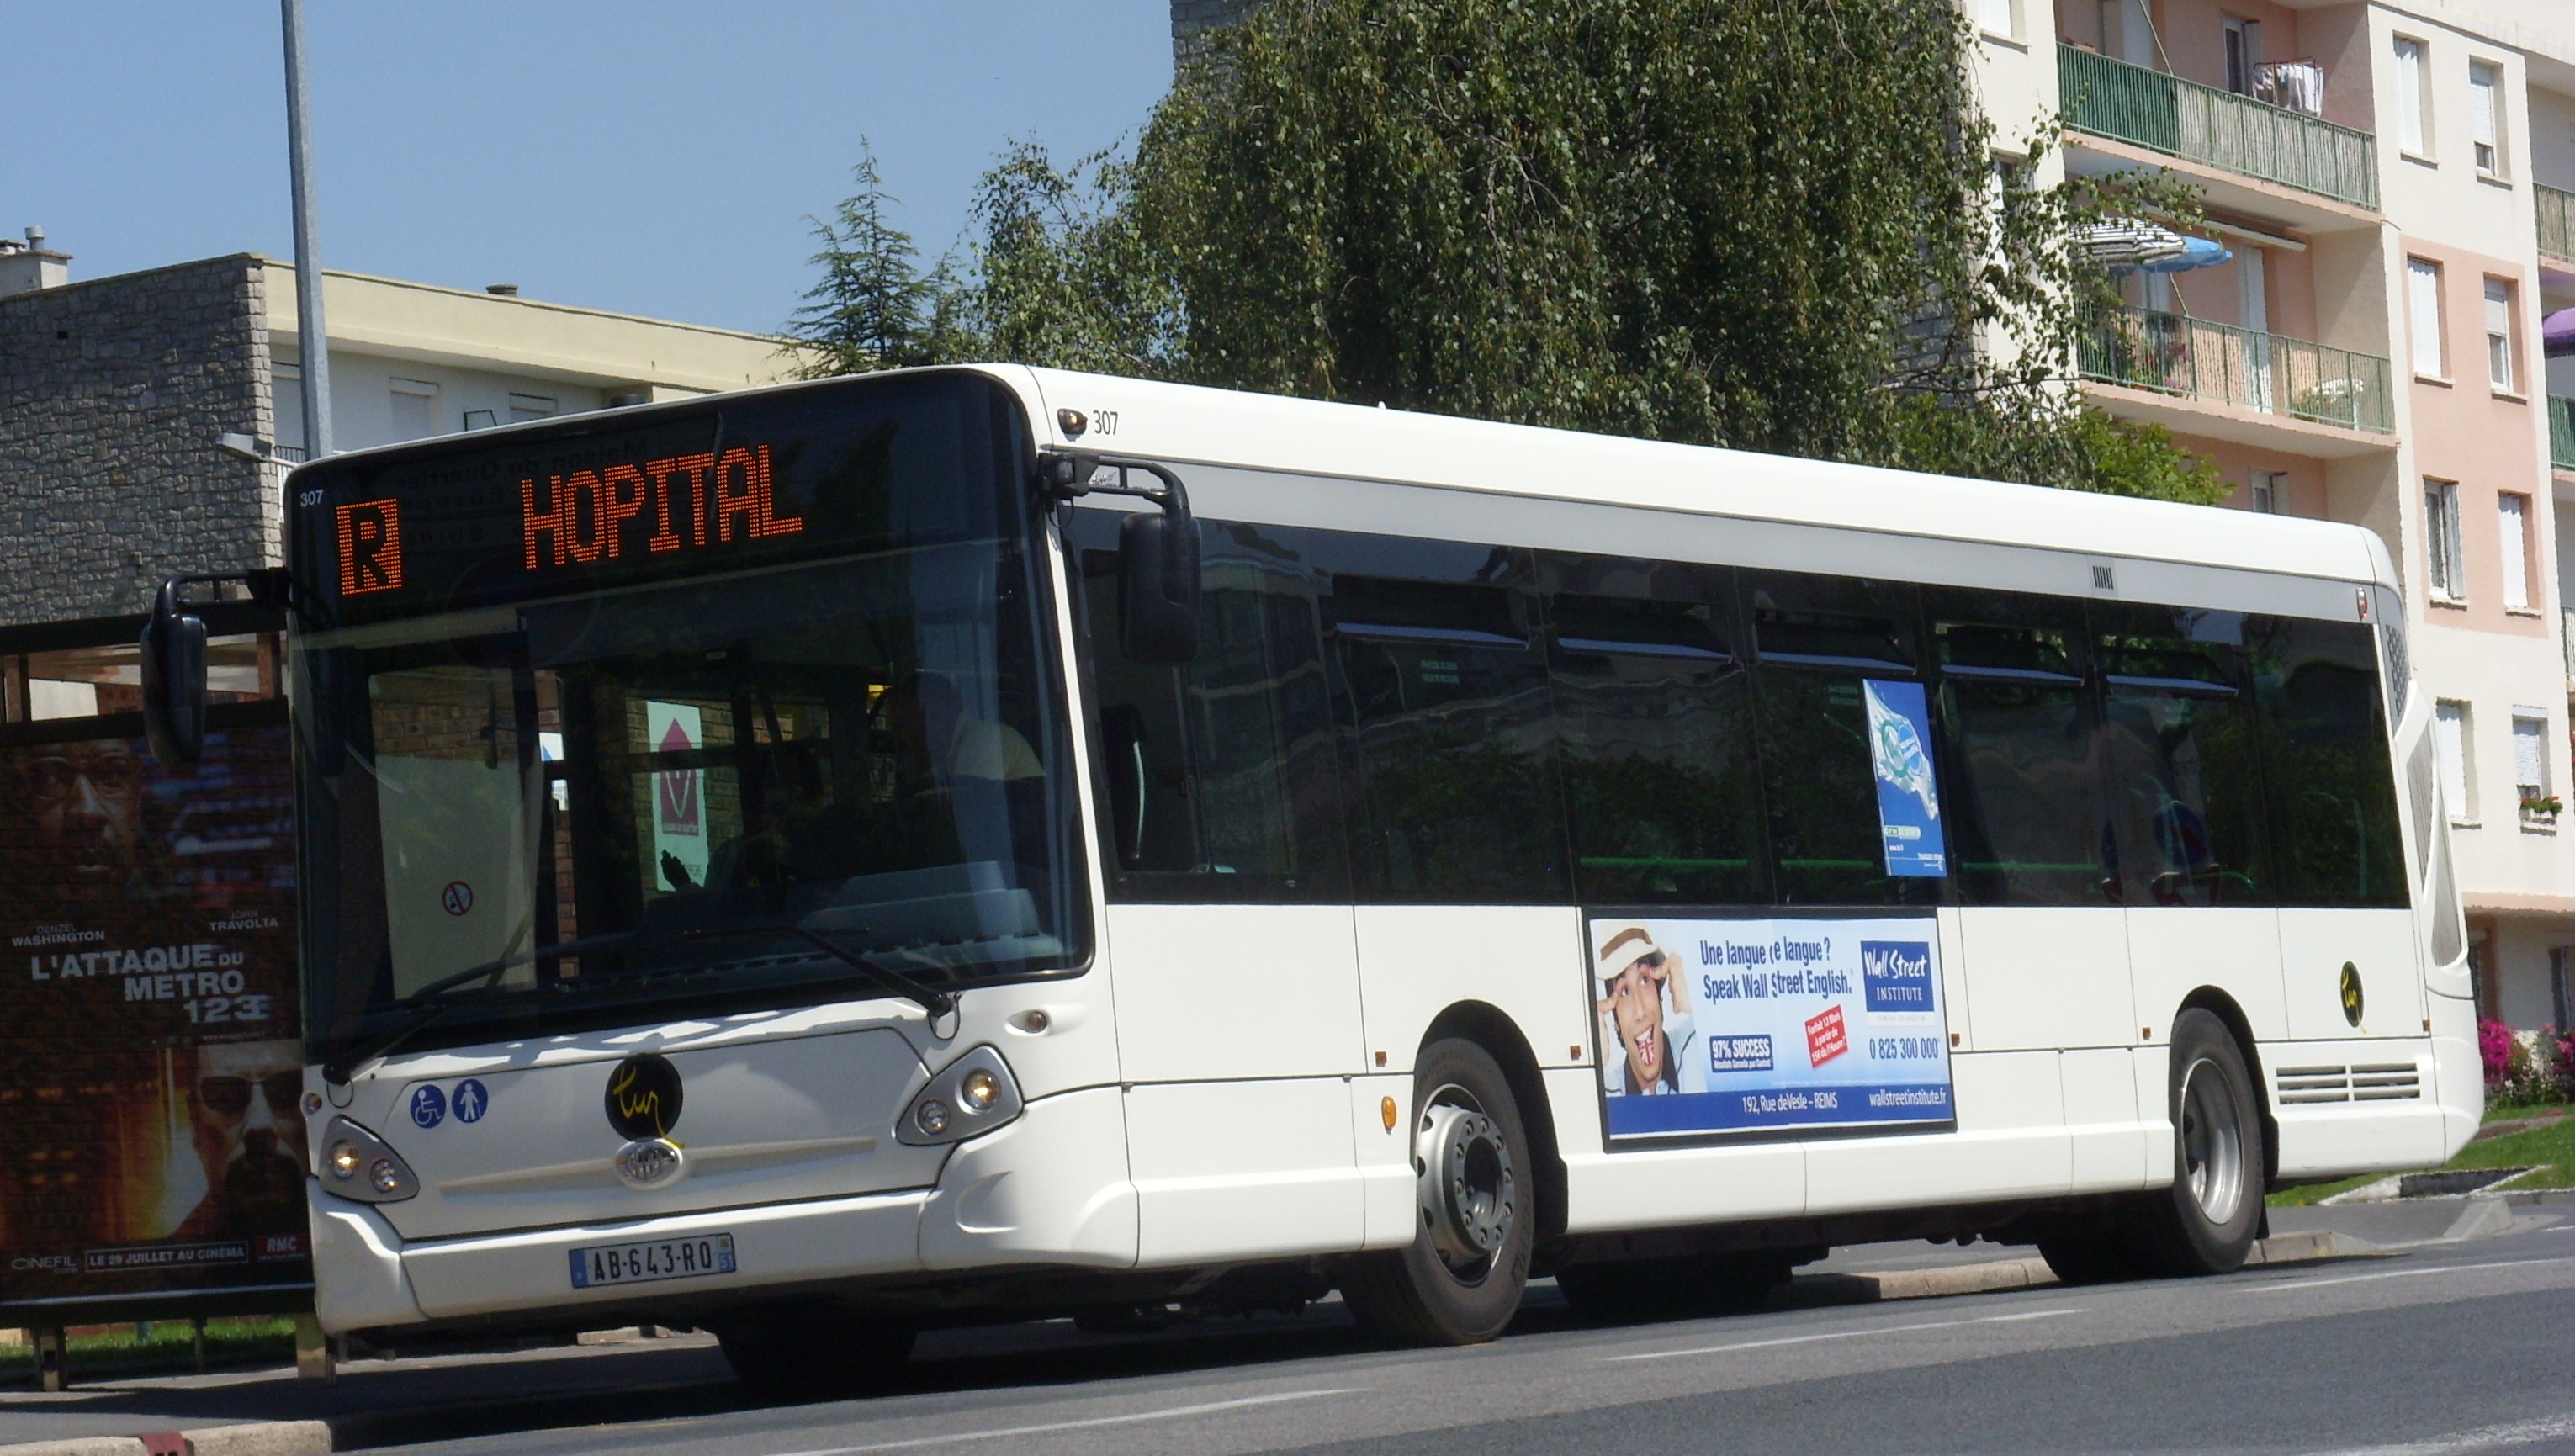 Tur - heuliez bus gx 327 n°307 - ligne r photo